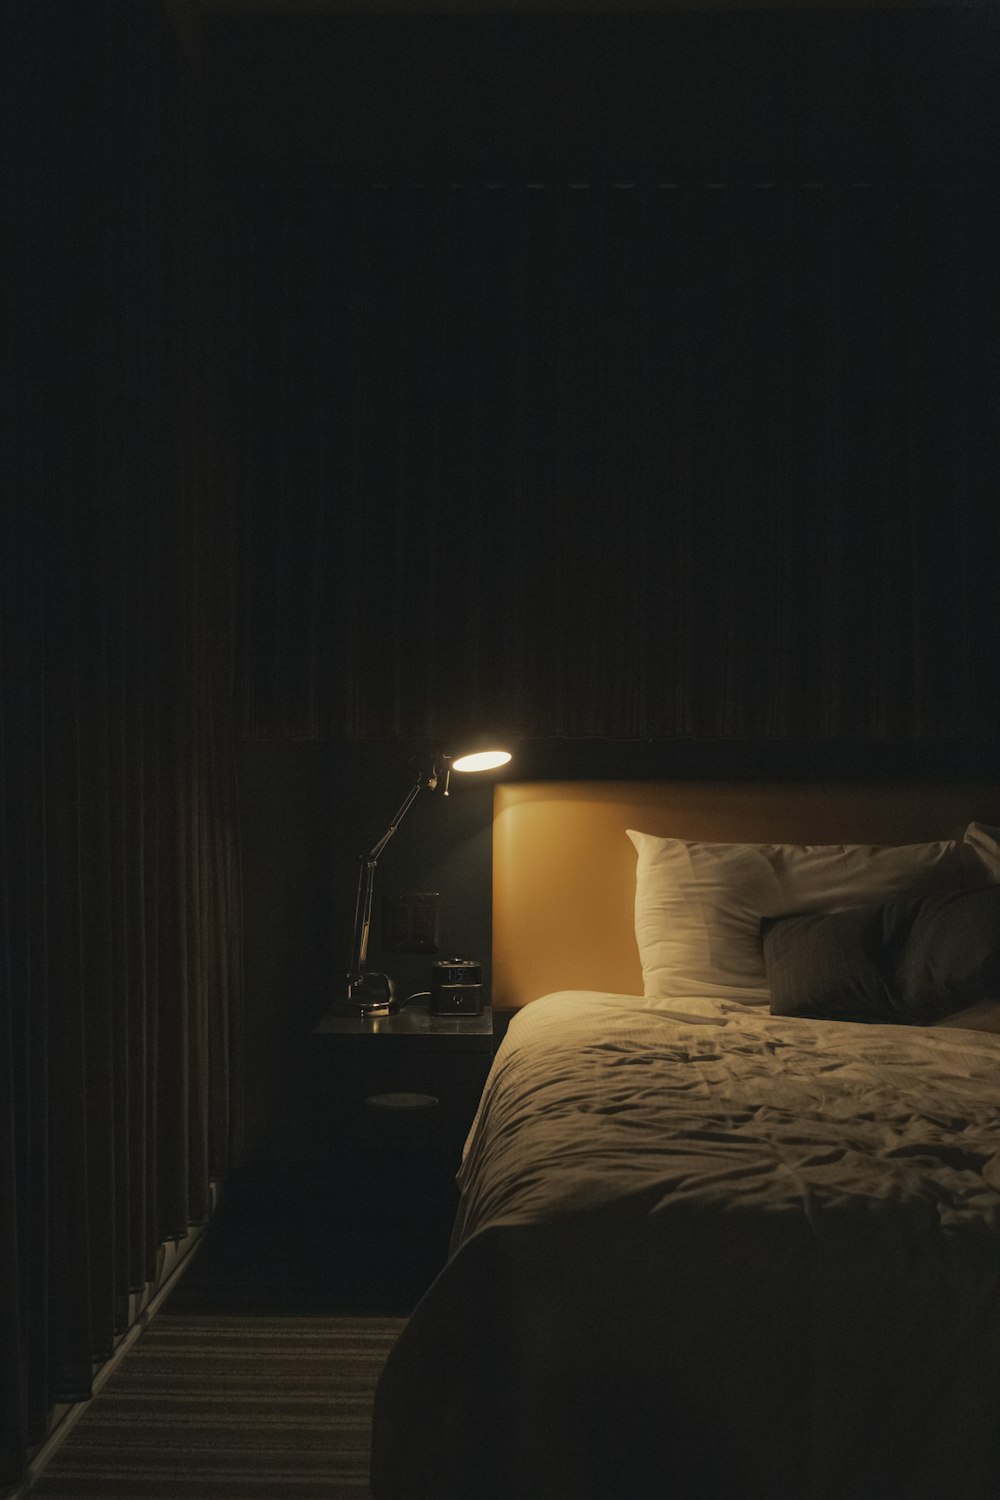 ベッド脇の勉強用ランプを点灯